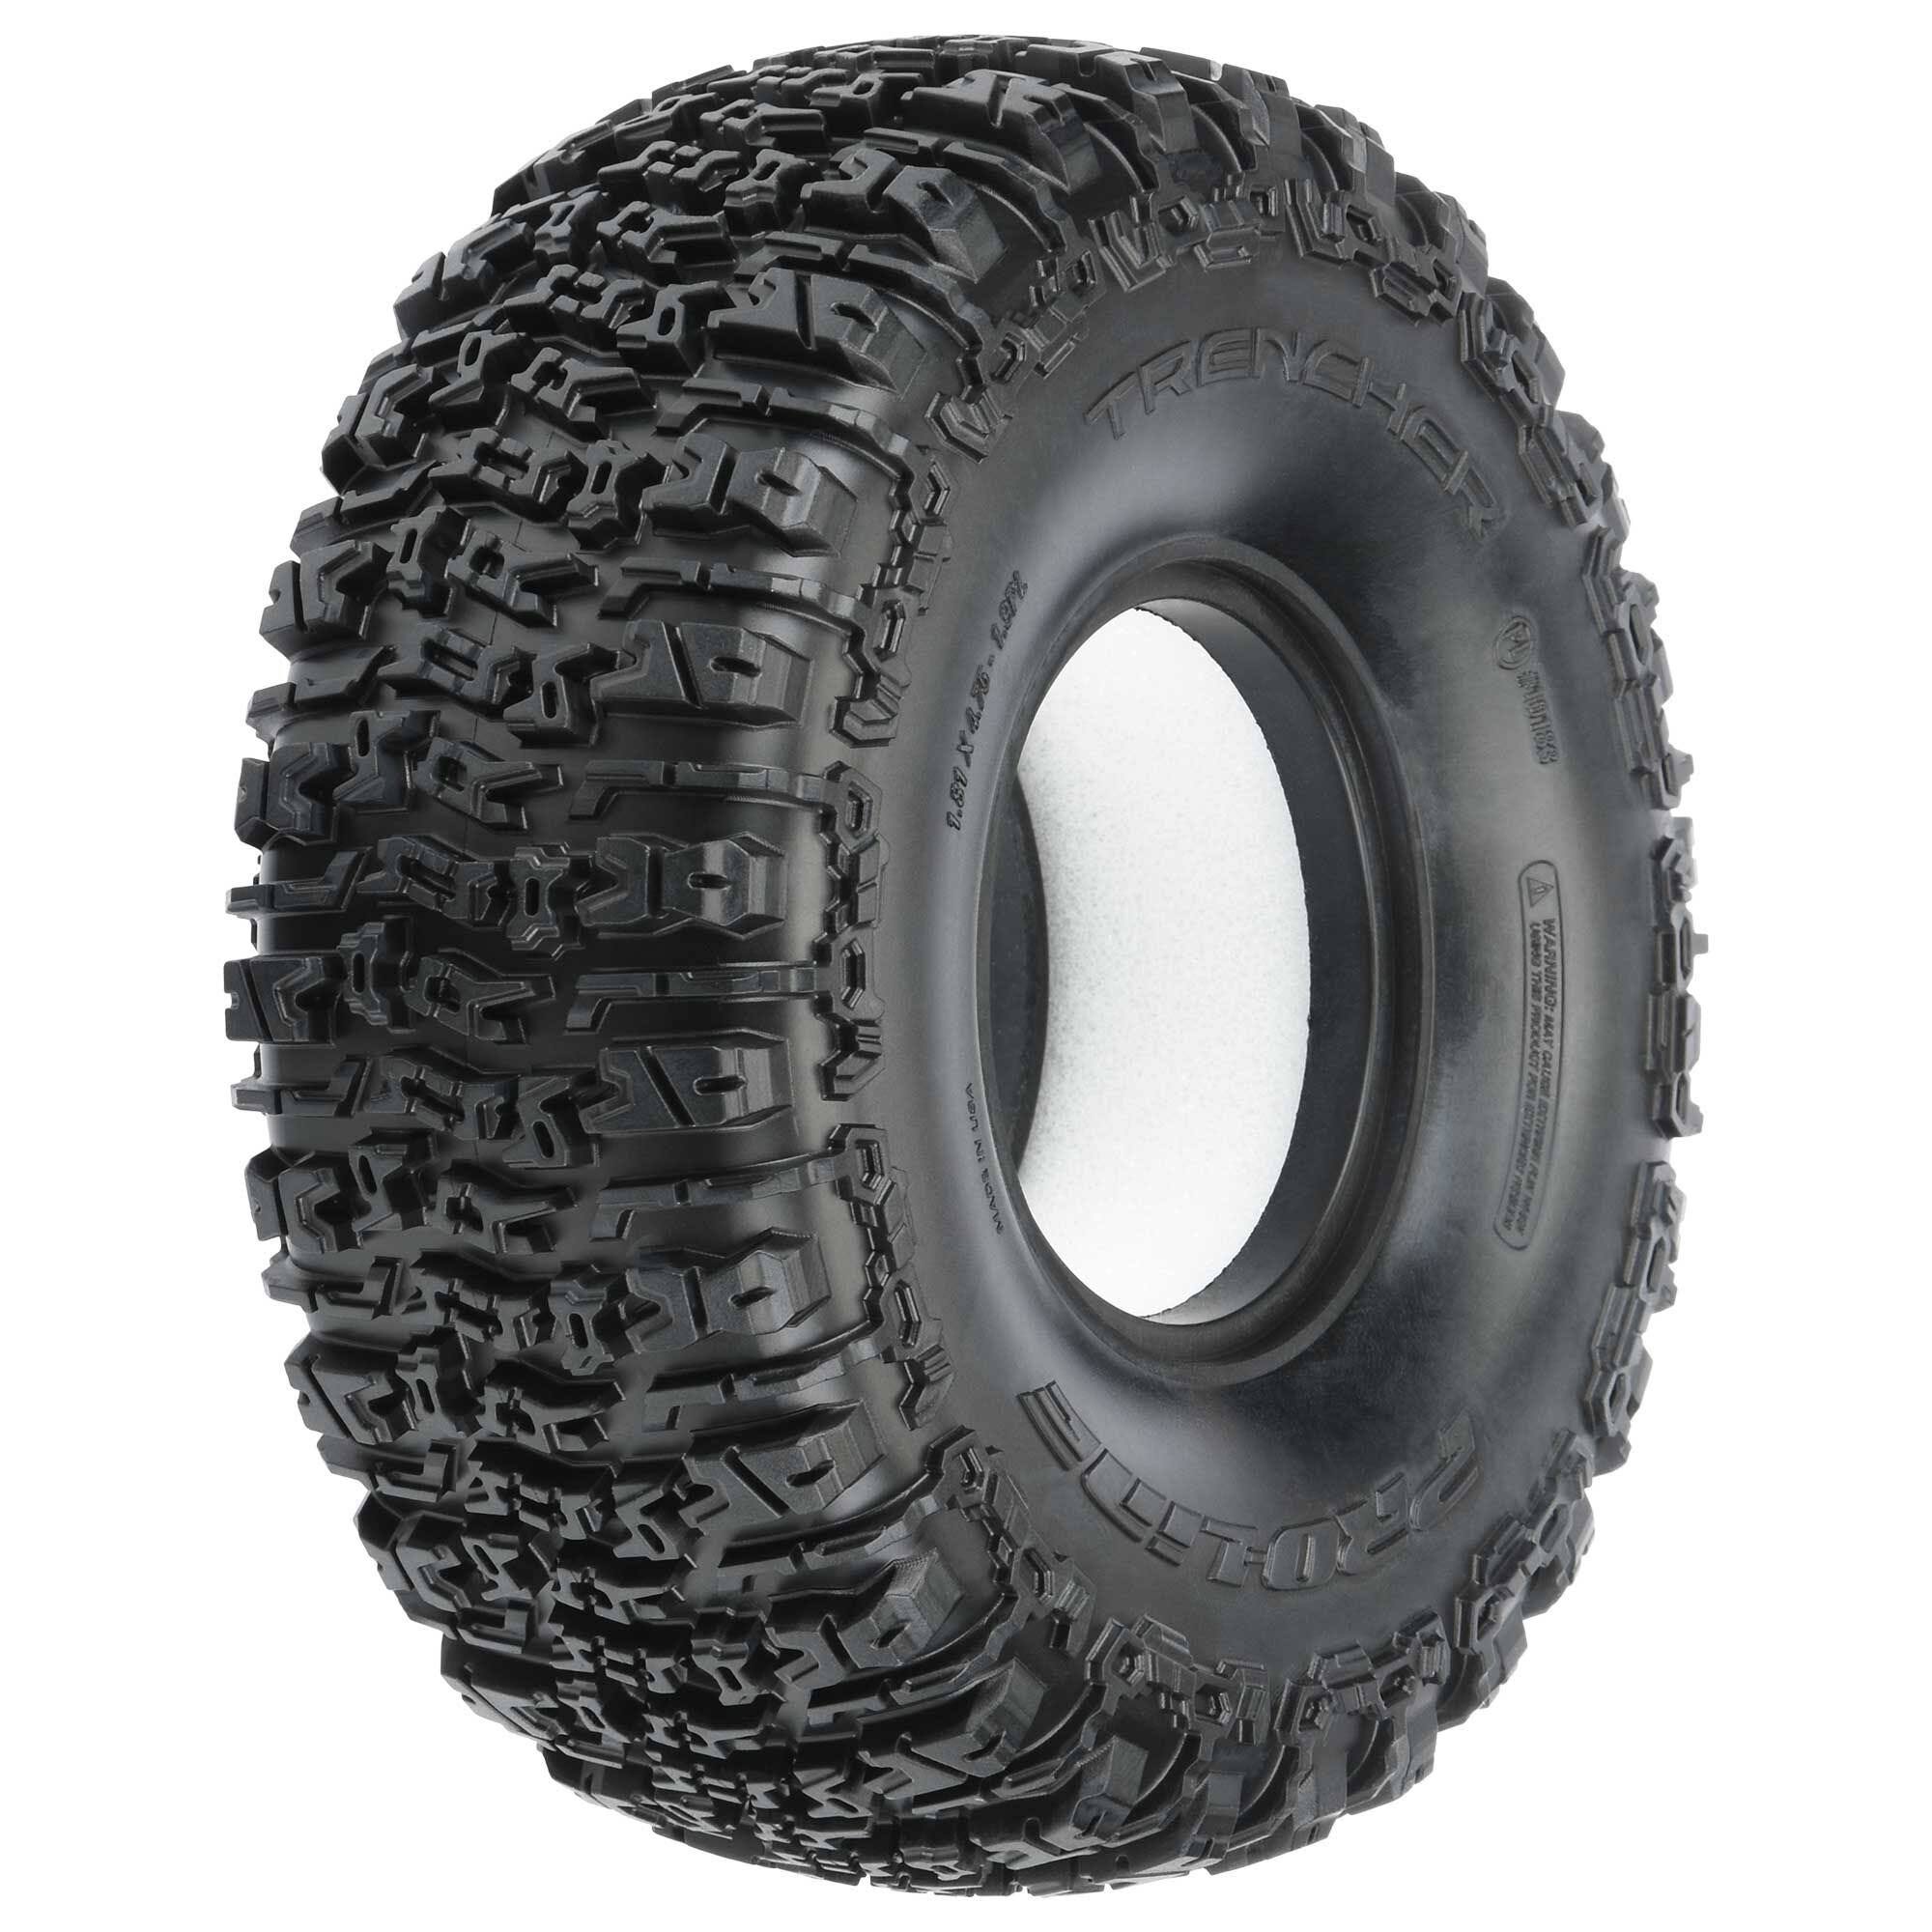 Proline Trencher 1.9 G8 Rock Terrain Crawler Truck Tyres